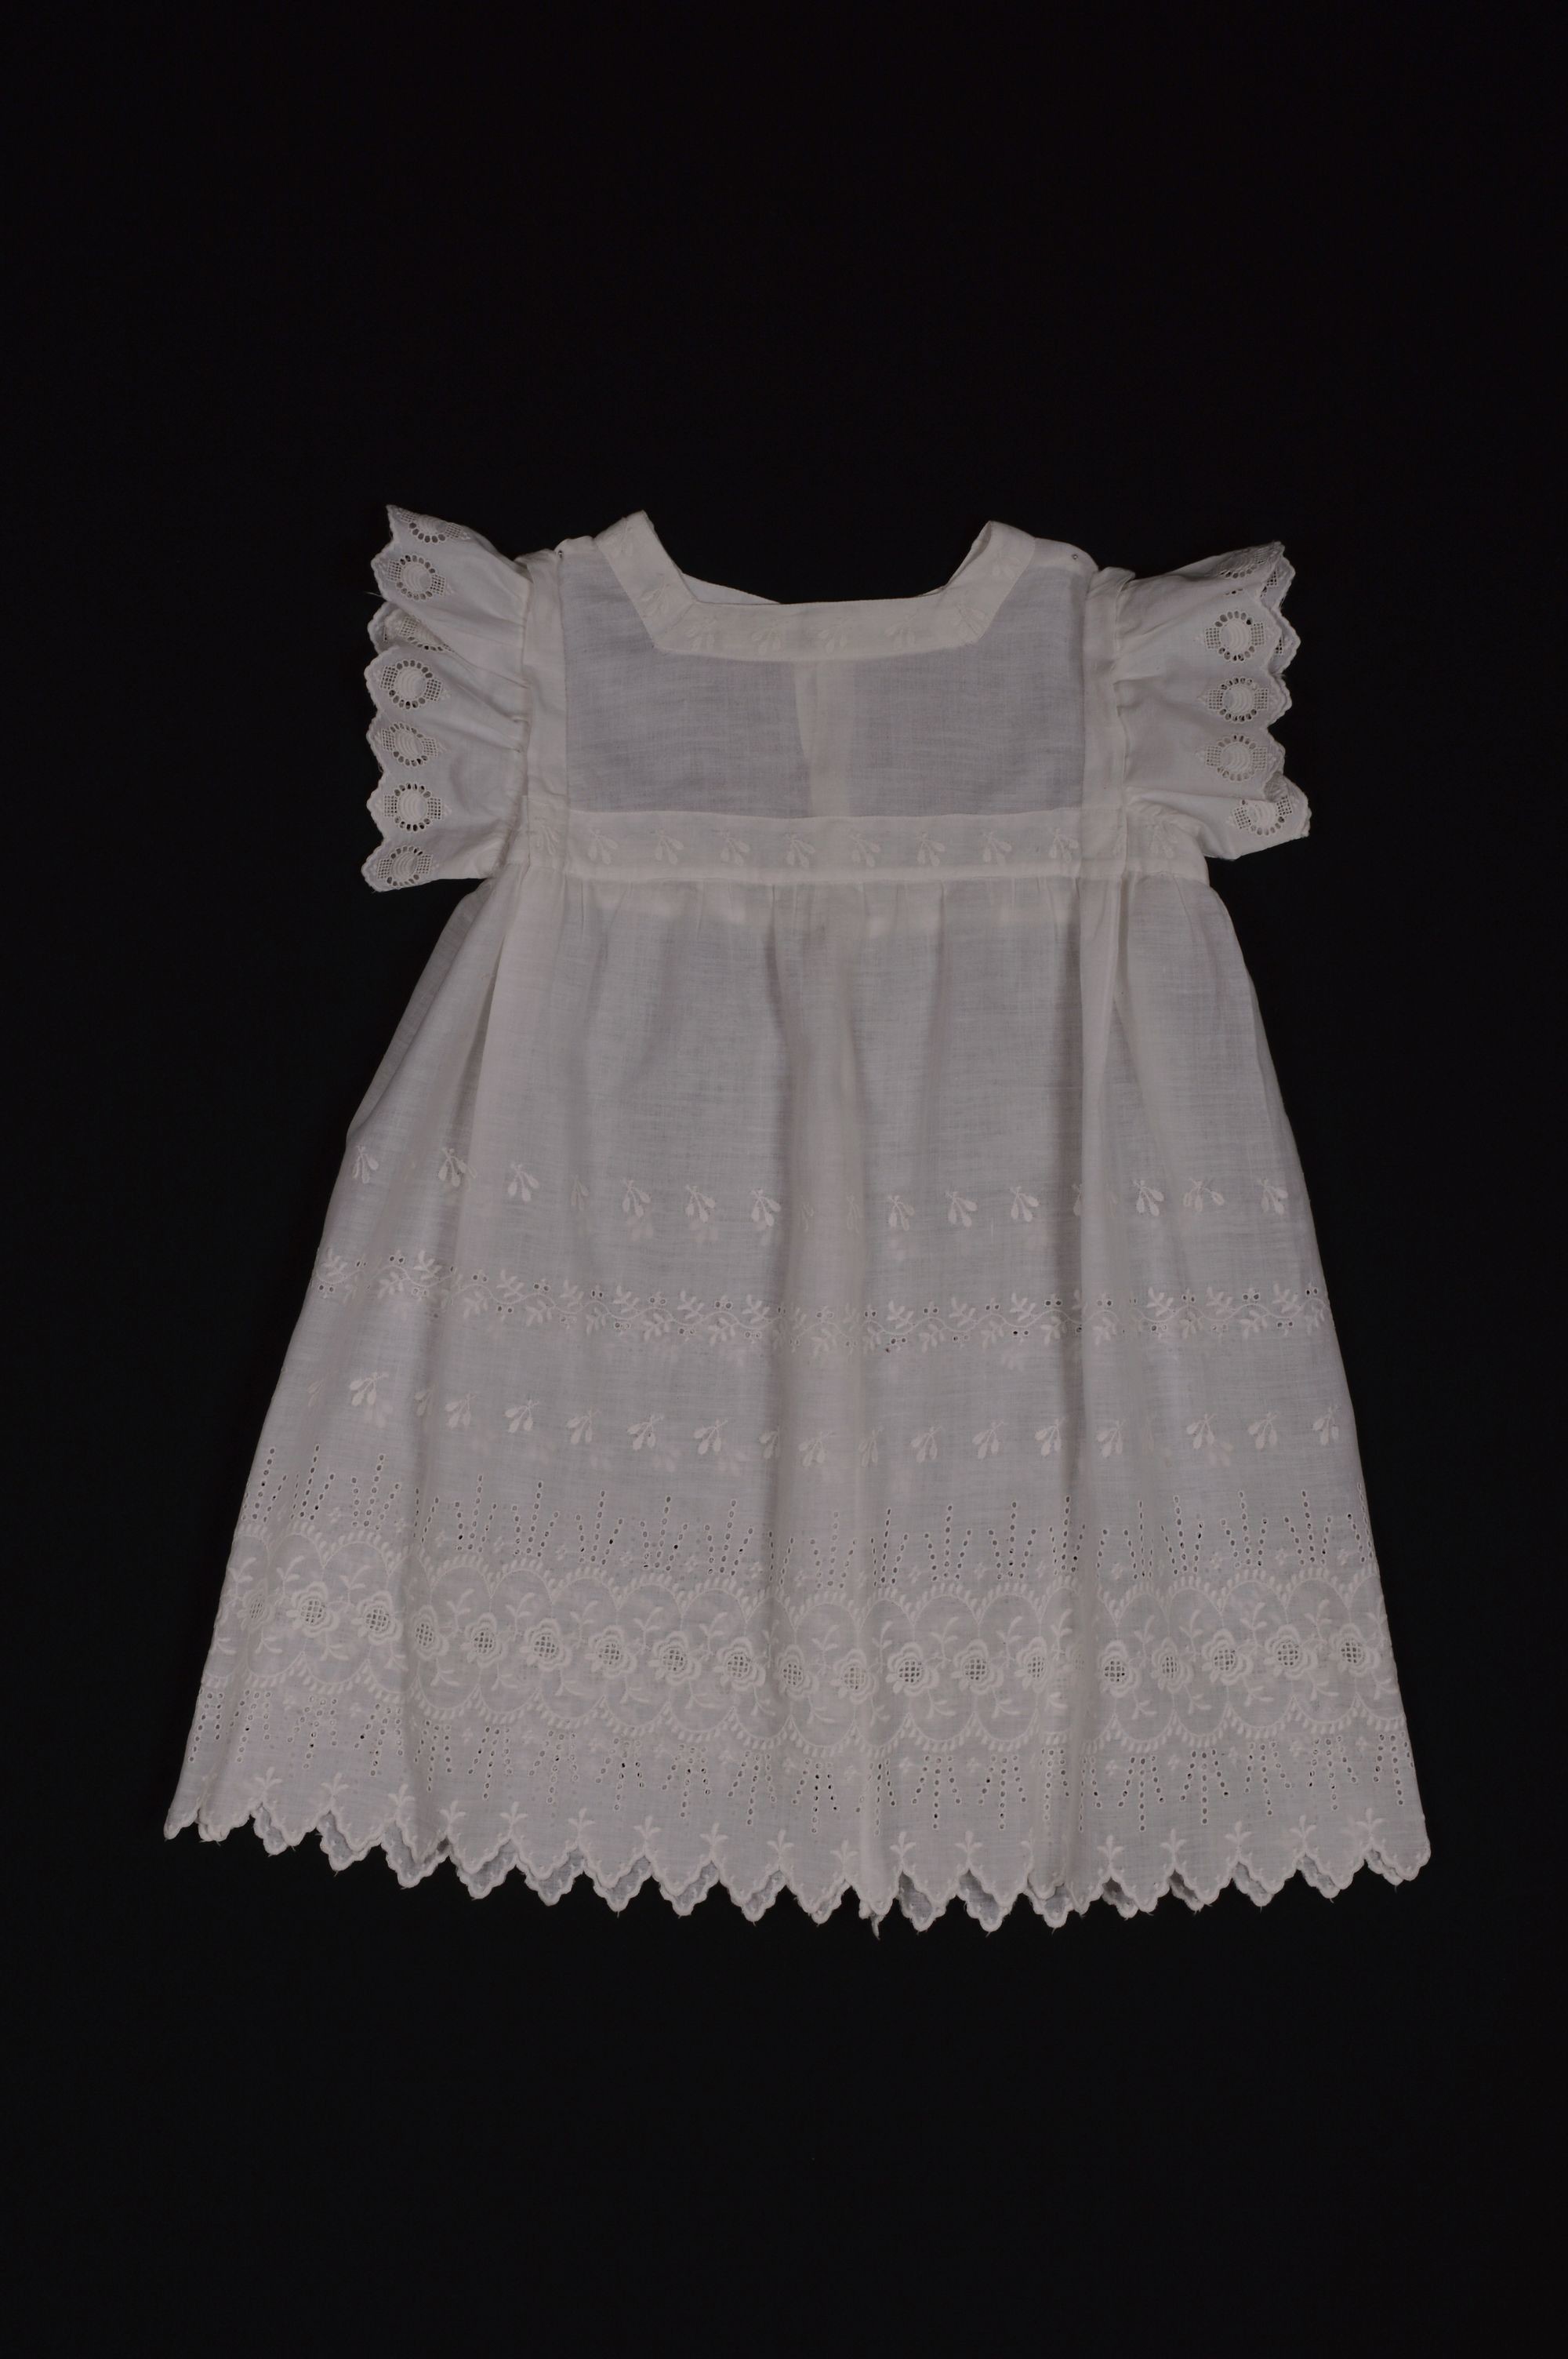 Kisfiú ruhácska "kisszoknya" (Rippl-Rónai Múzeum CC BY-NC-ND)